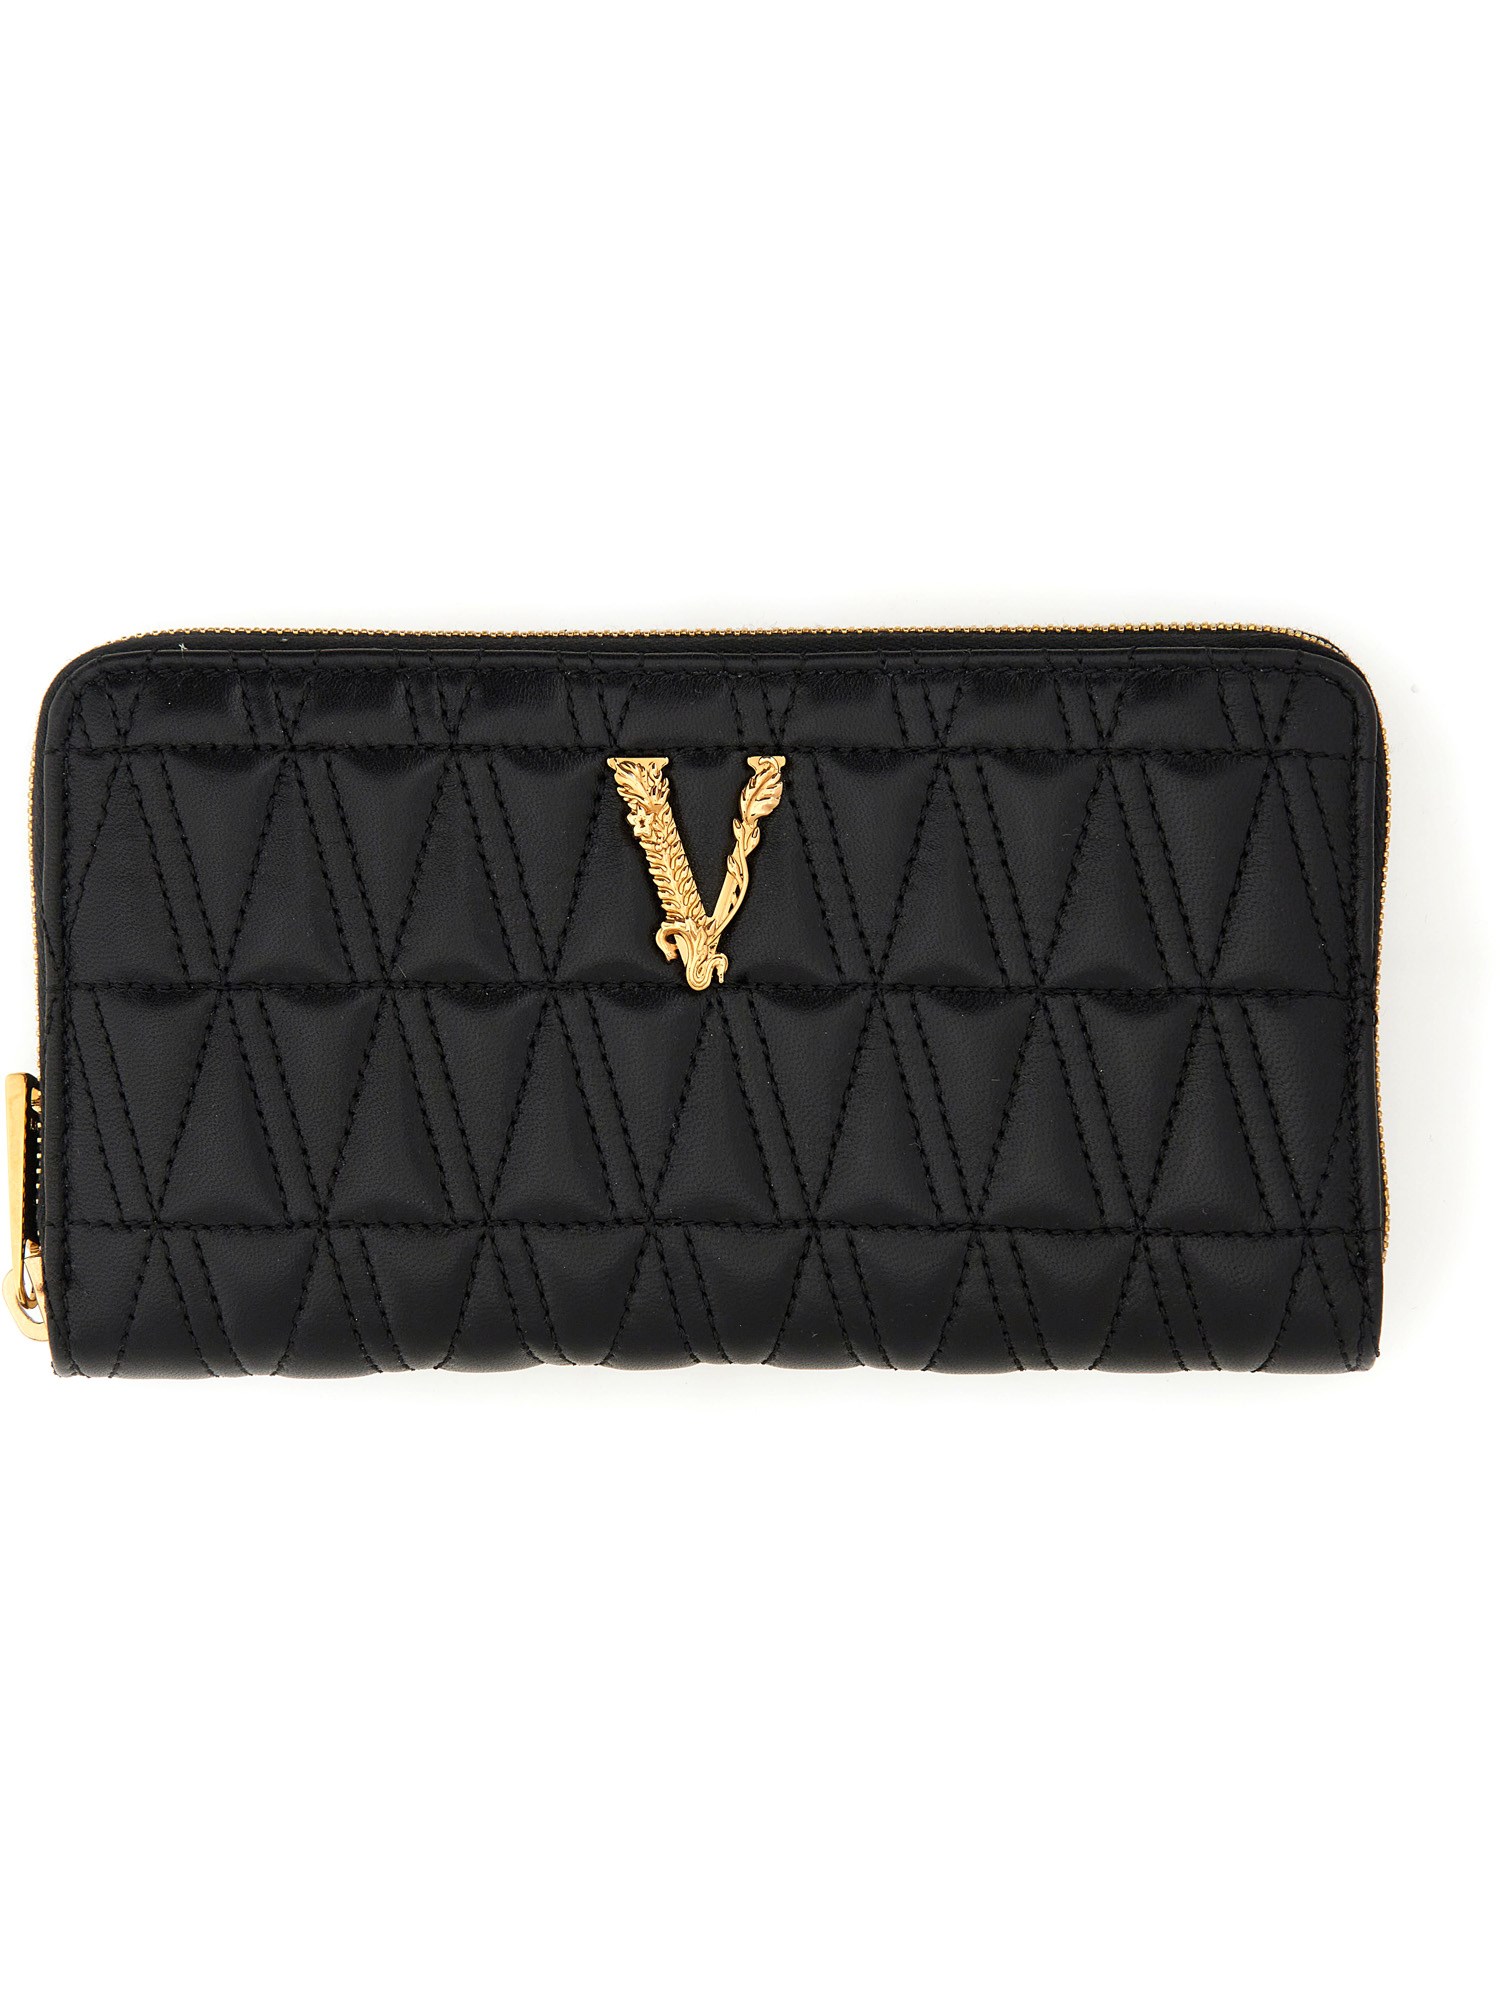 Versace versace "virtus" portfolio